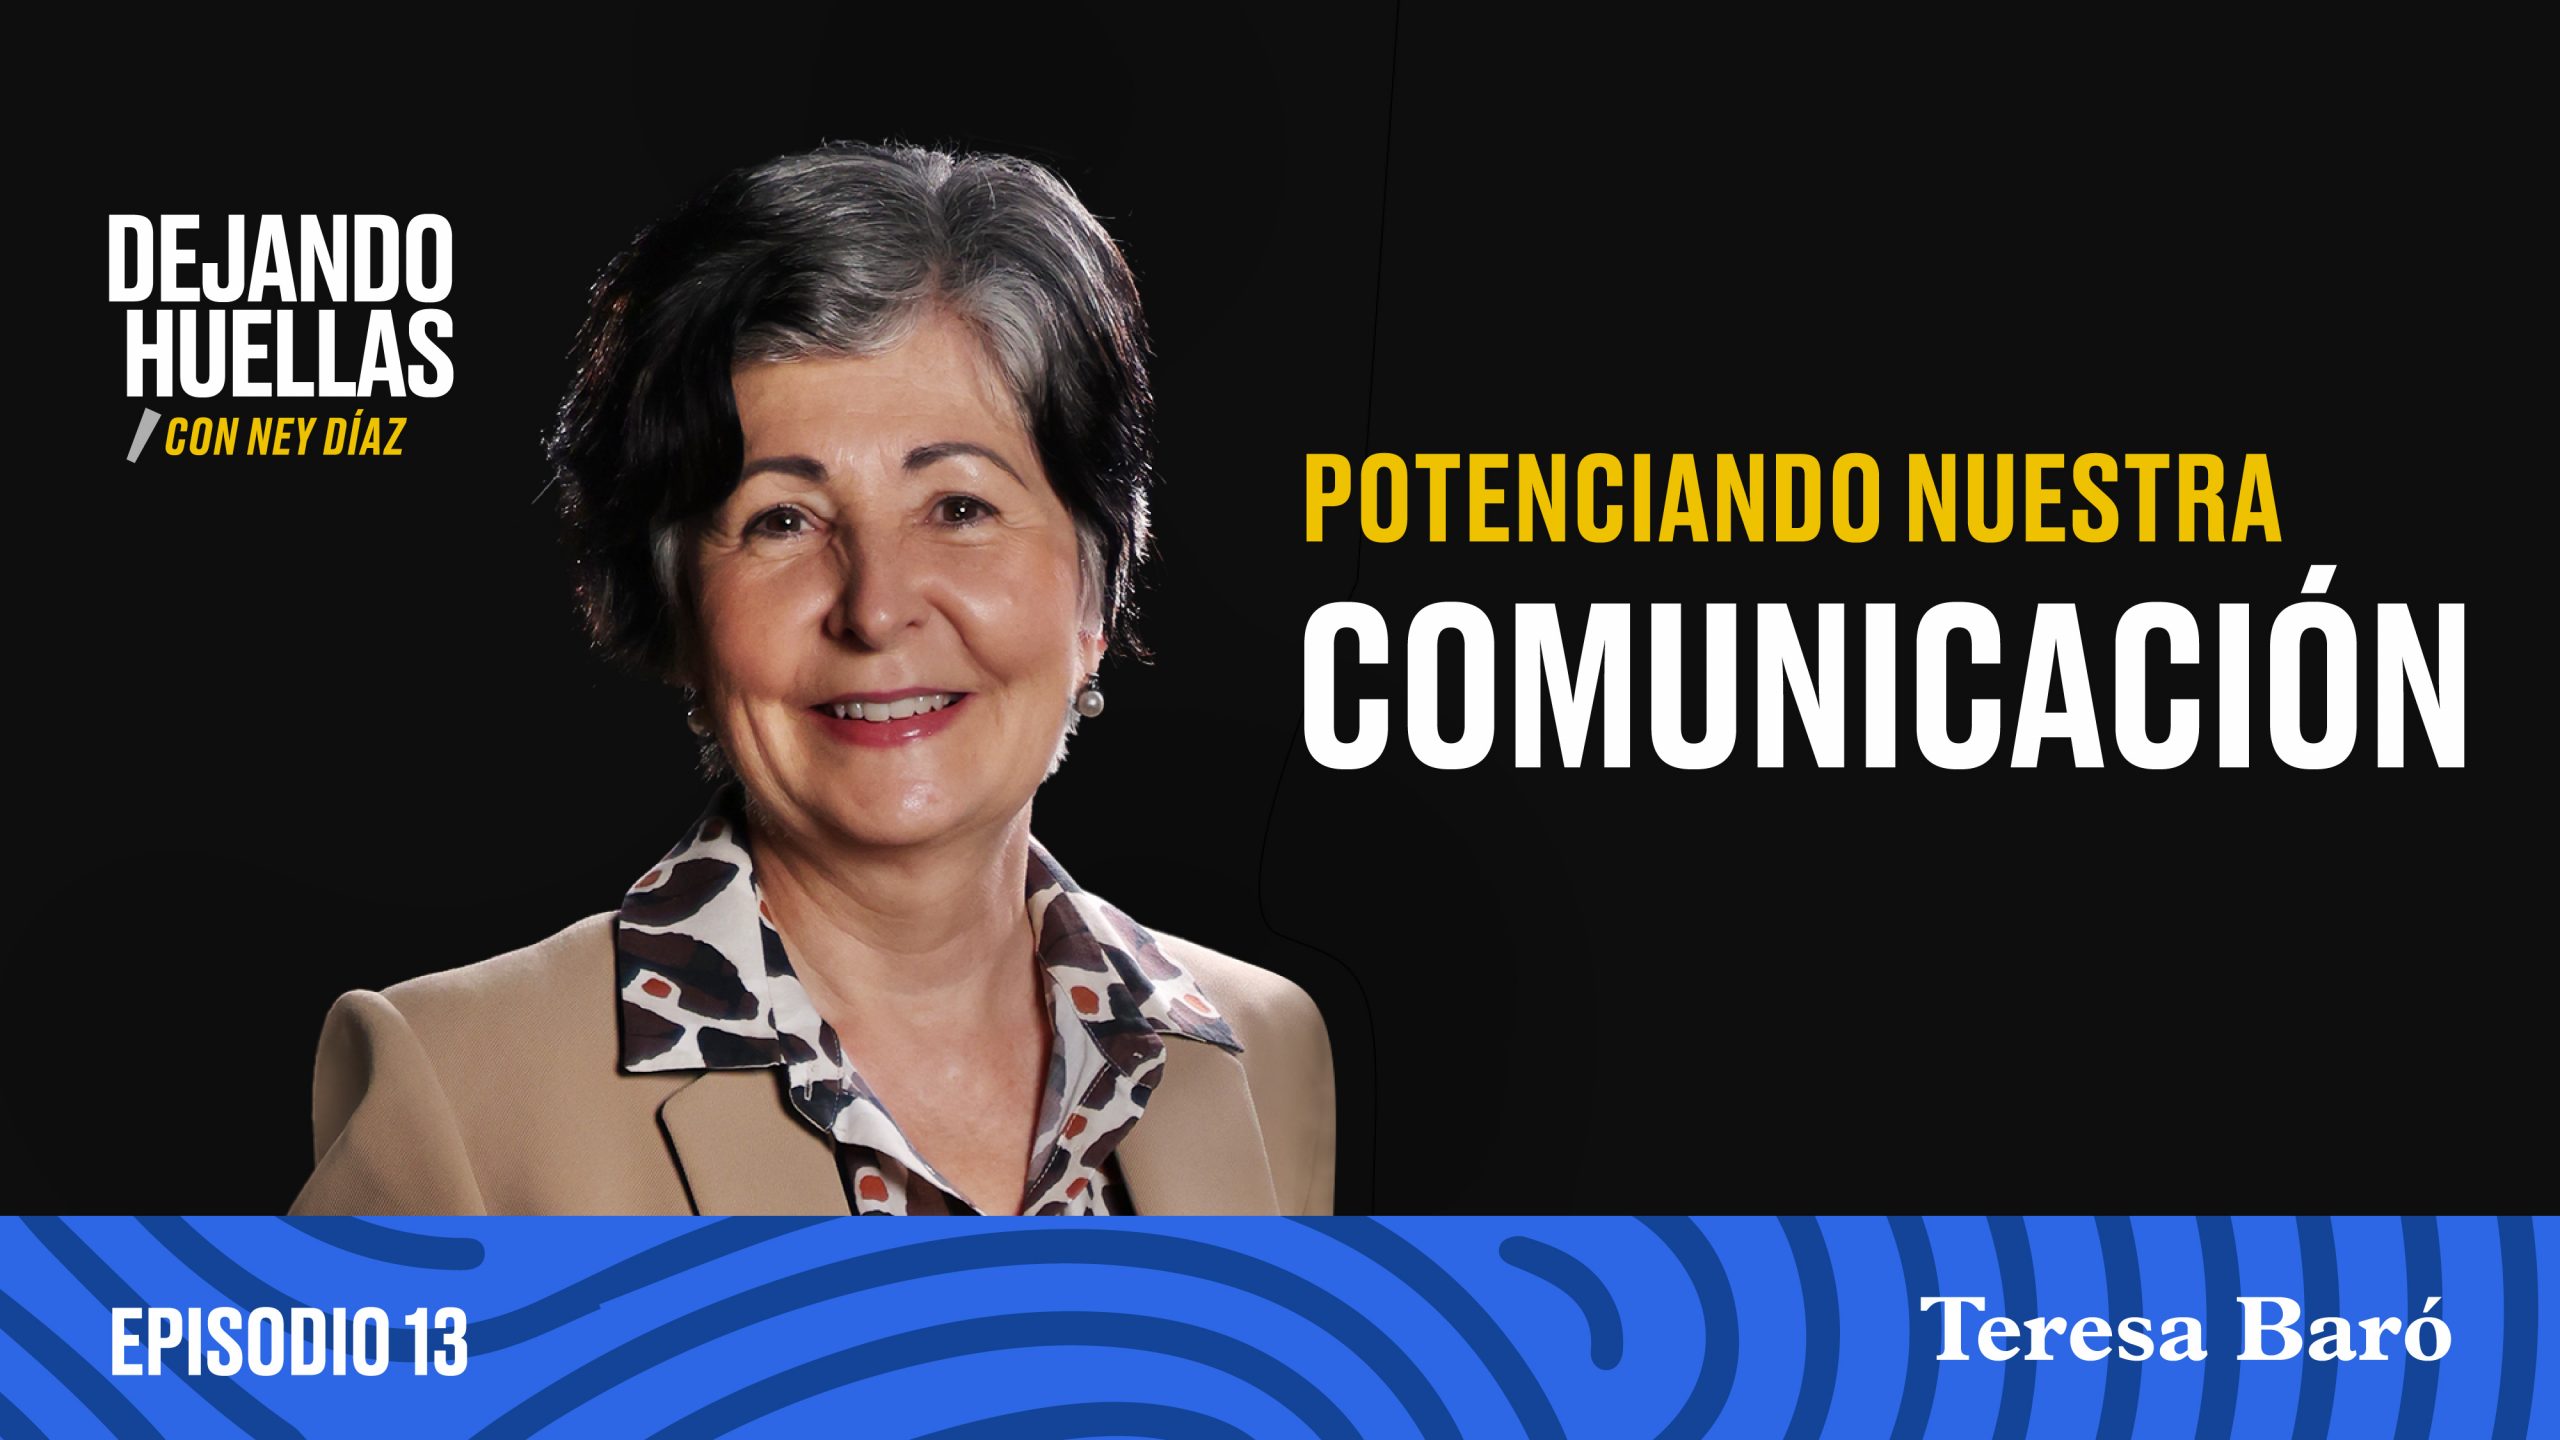 Episodio #13 - Teresa Baró: Potenciando nuestra comunicación [T1]